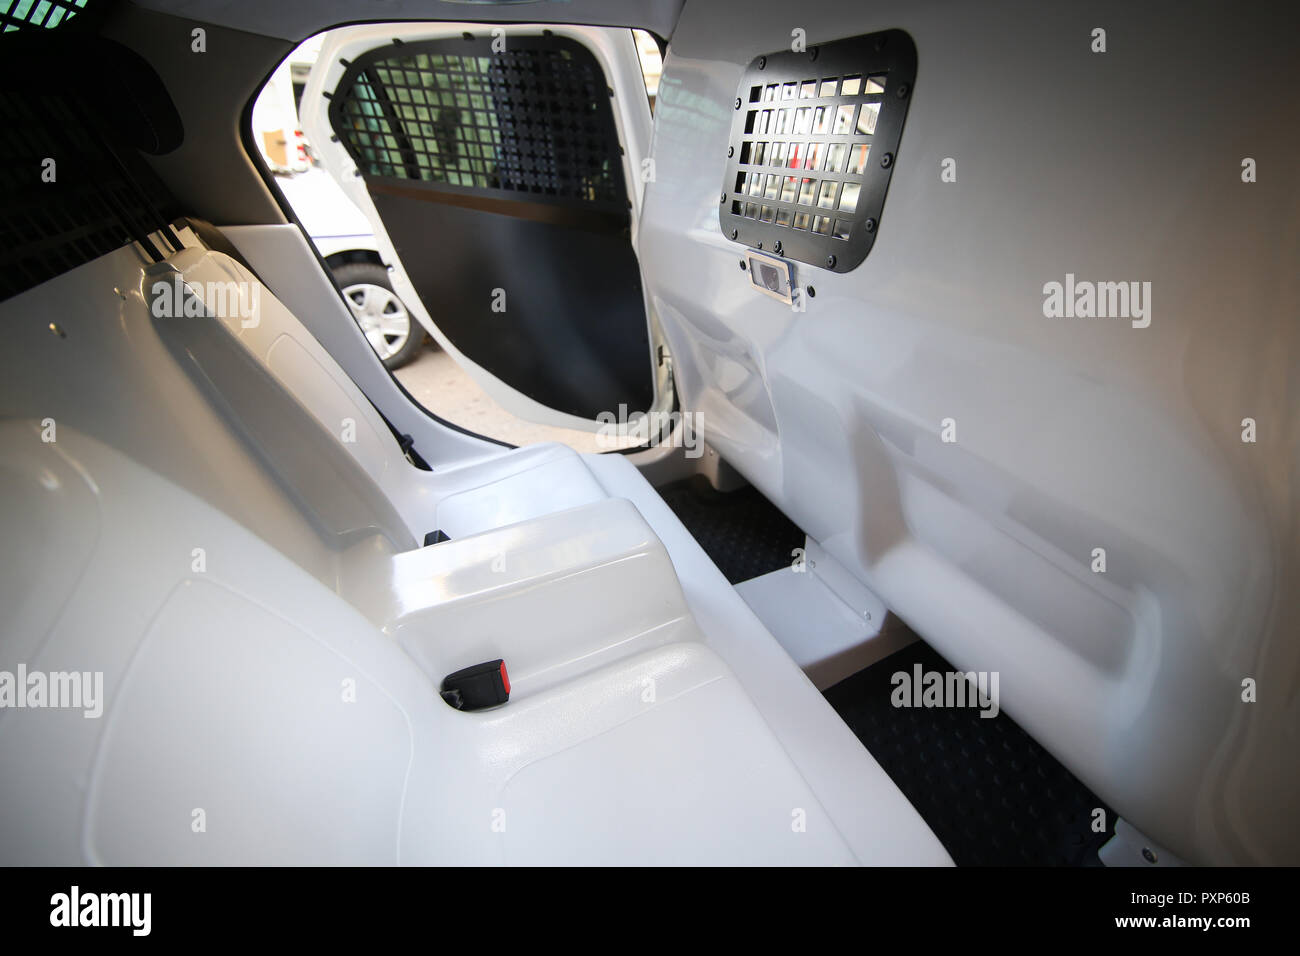 Dettagli dall'interno di un rumeno veicolo polizia, con barre su windows e un sistema di monitoraggio video camera sul retro Foto Stock